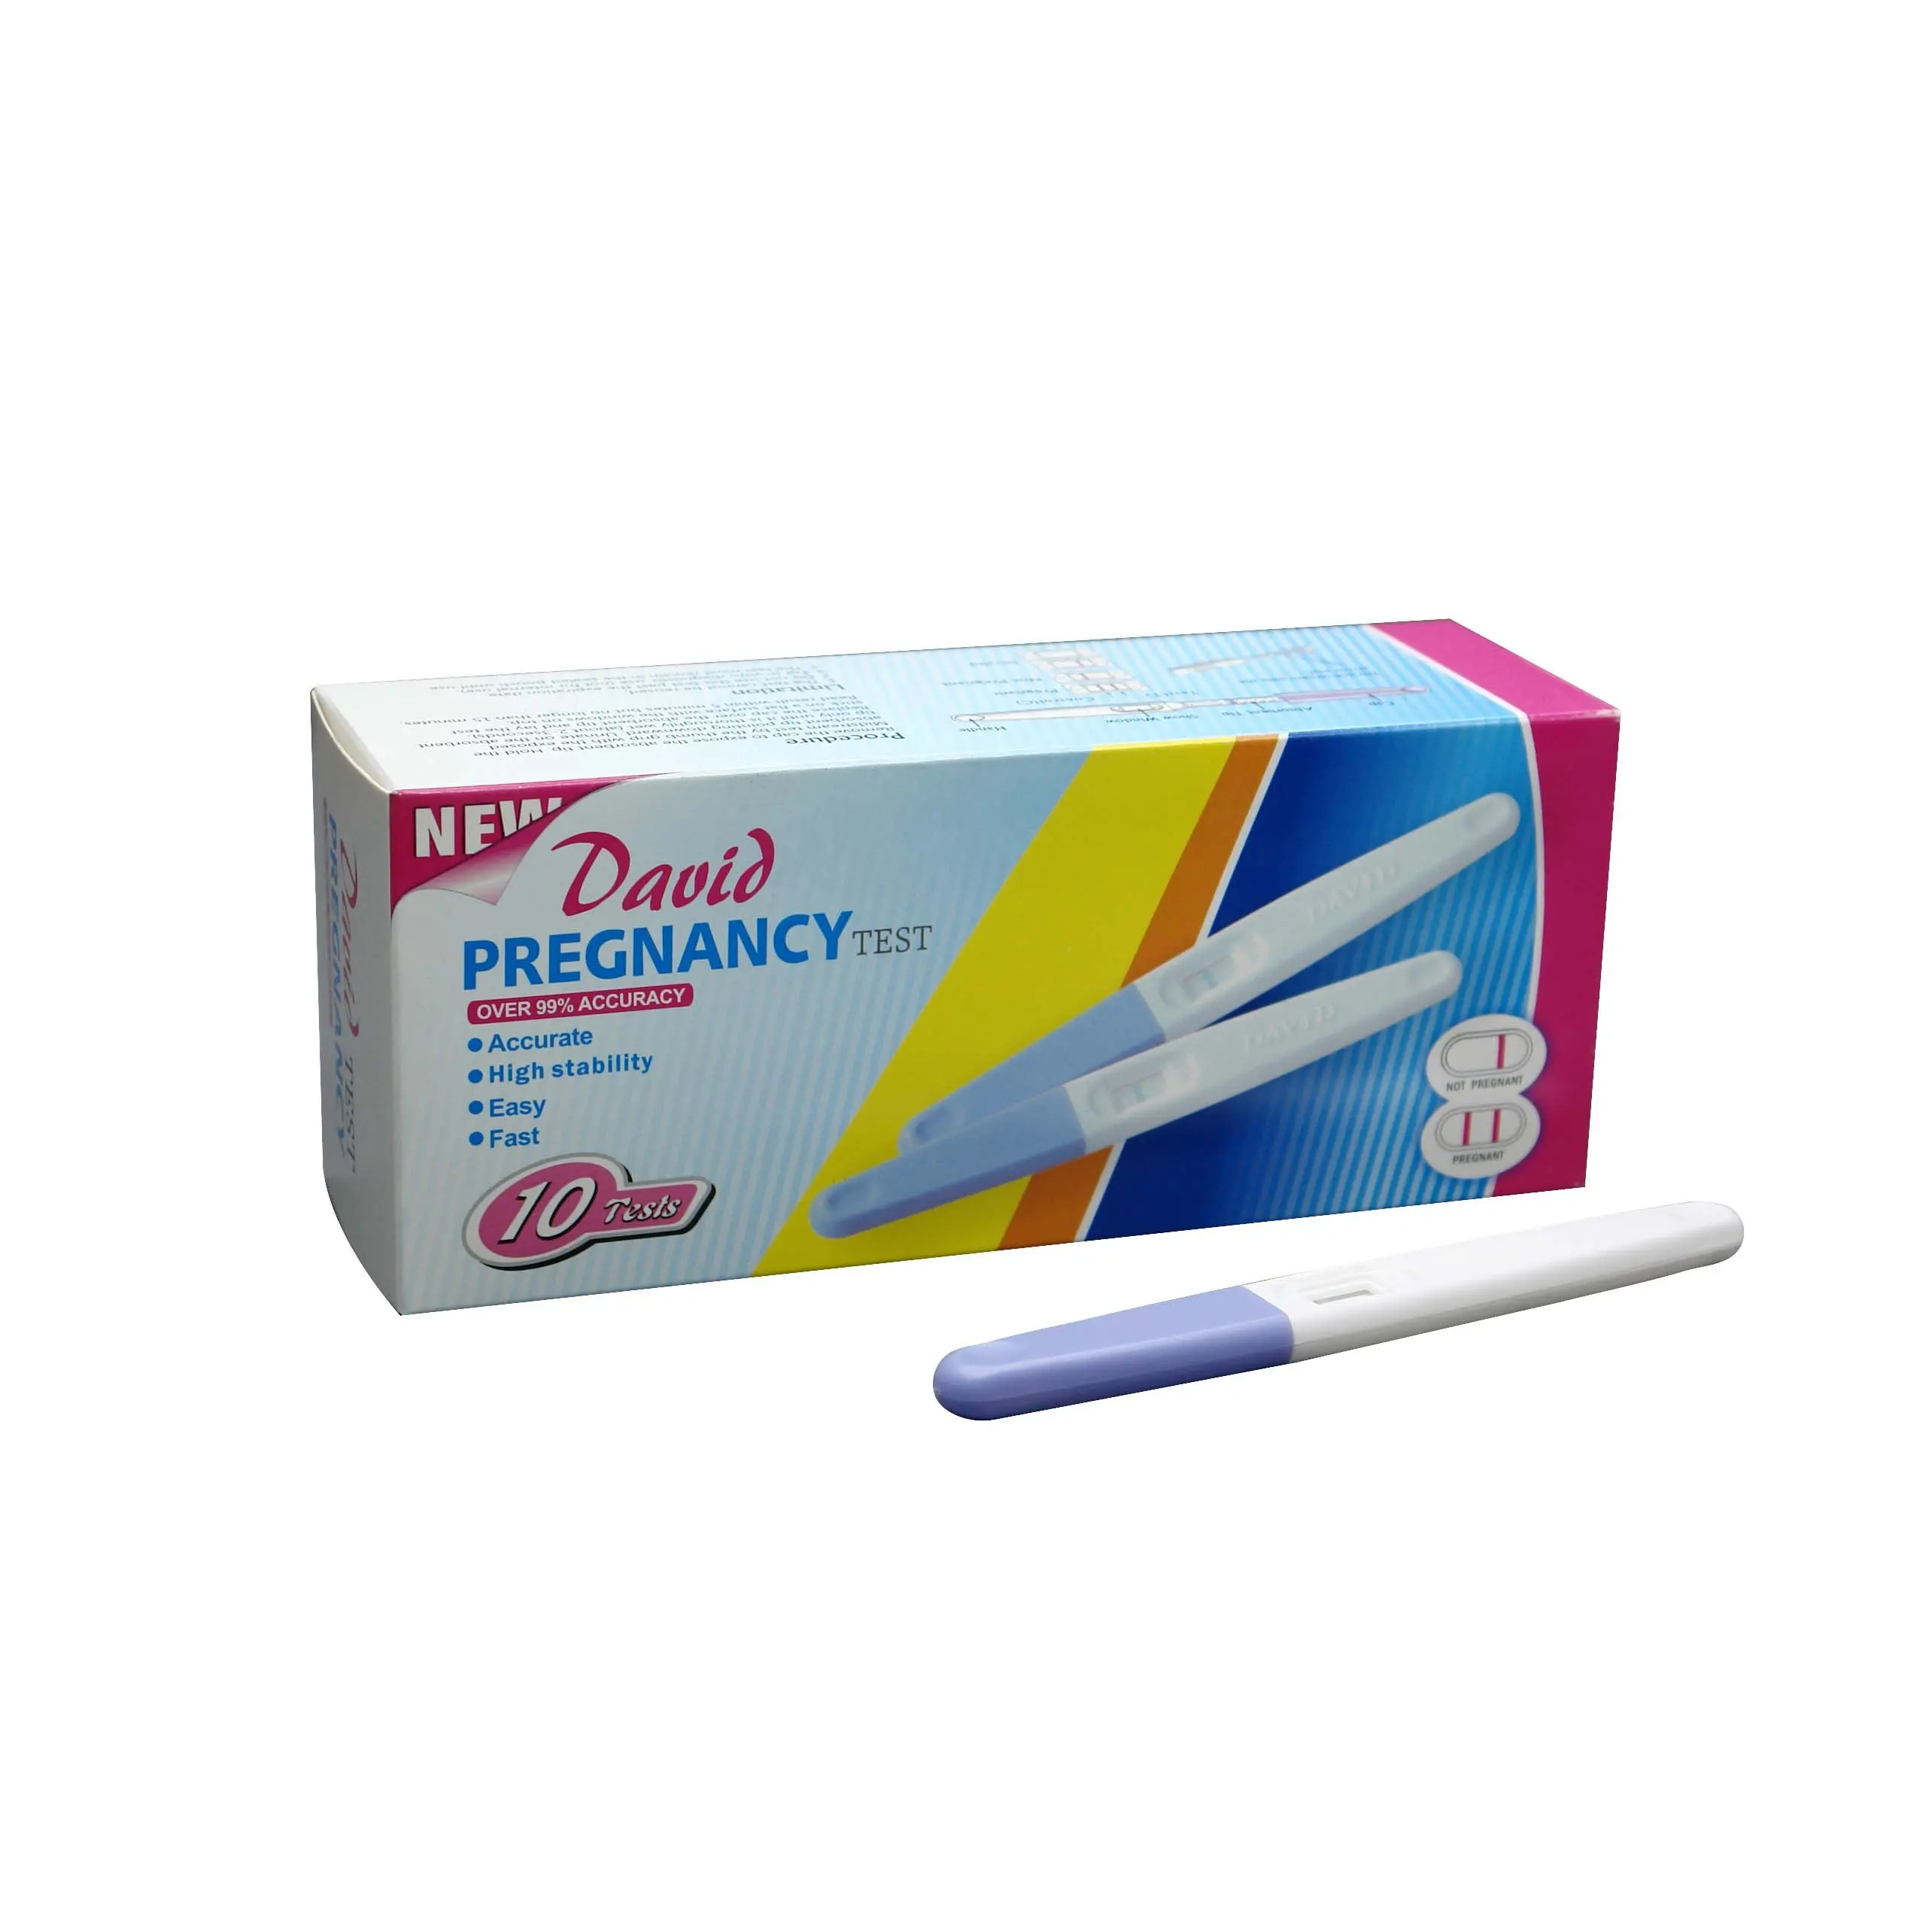 Diagnostic Test Daivd CE 510K APPROVAL Prueba De Embarazo Diagnostic HCG Pregnancy Test Midstream Kits